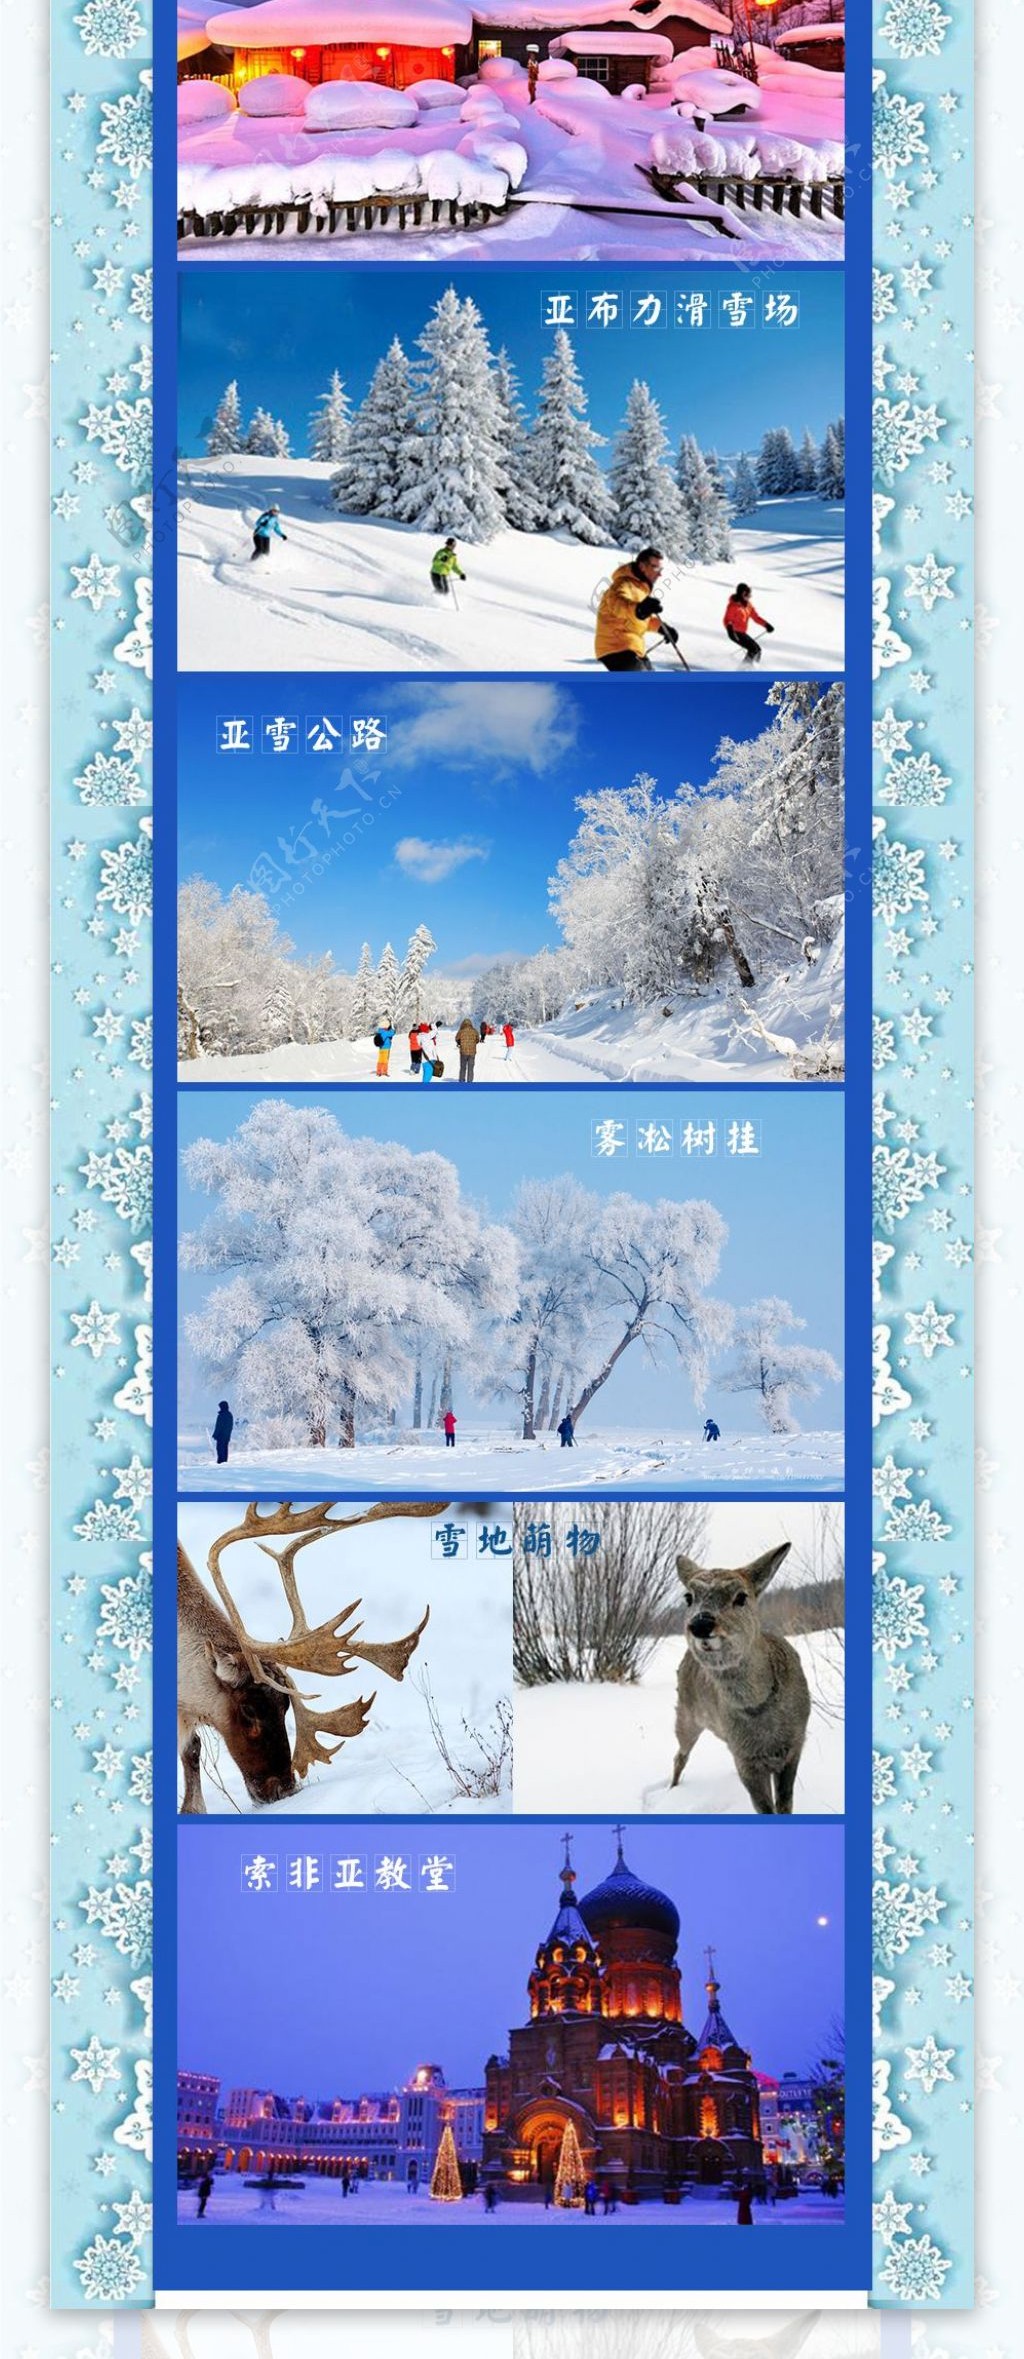 哈尔滨冰雪度假旅游详情页